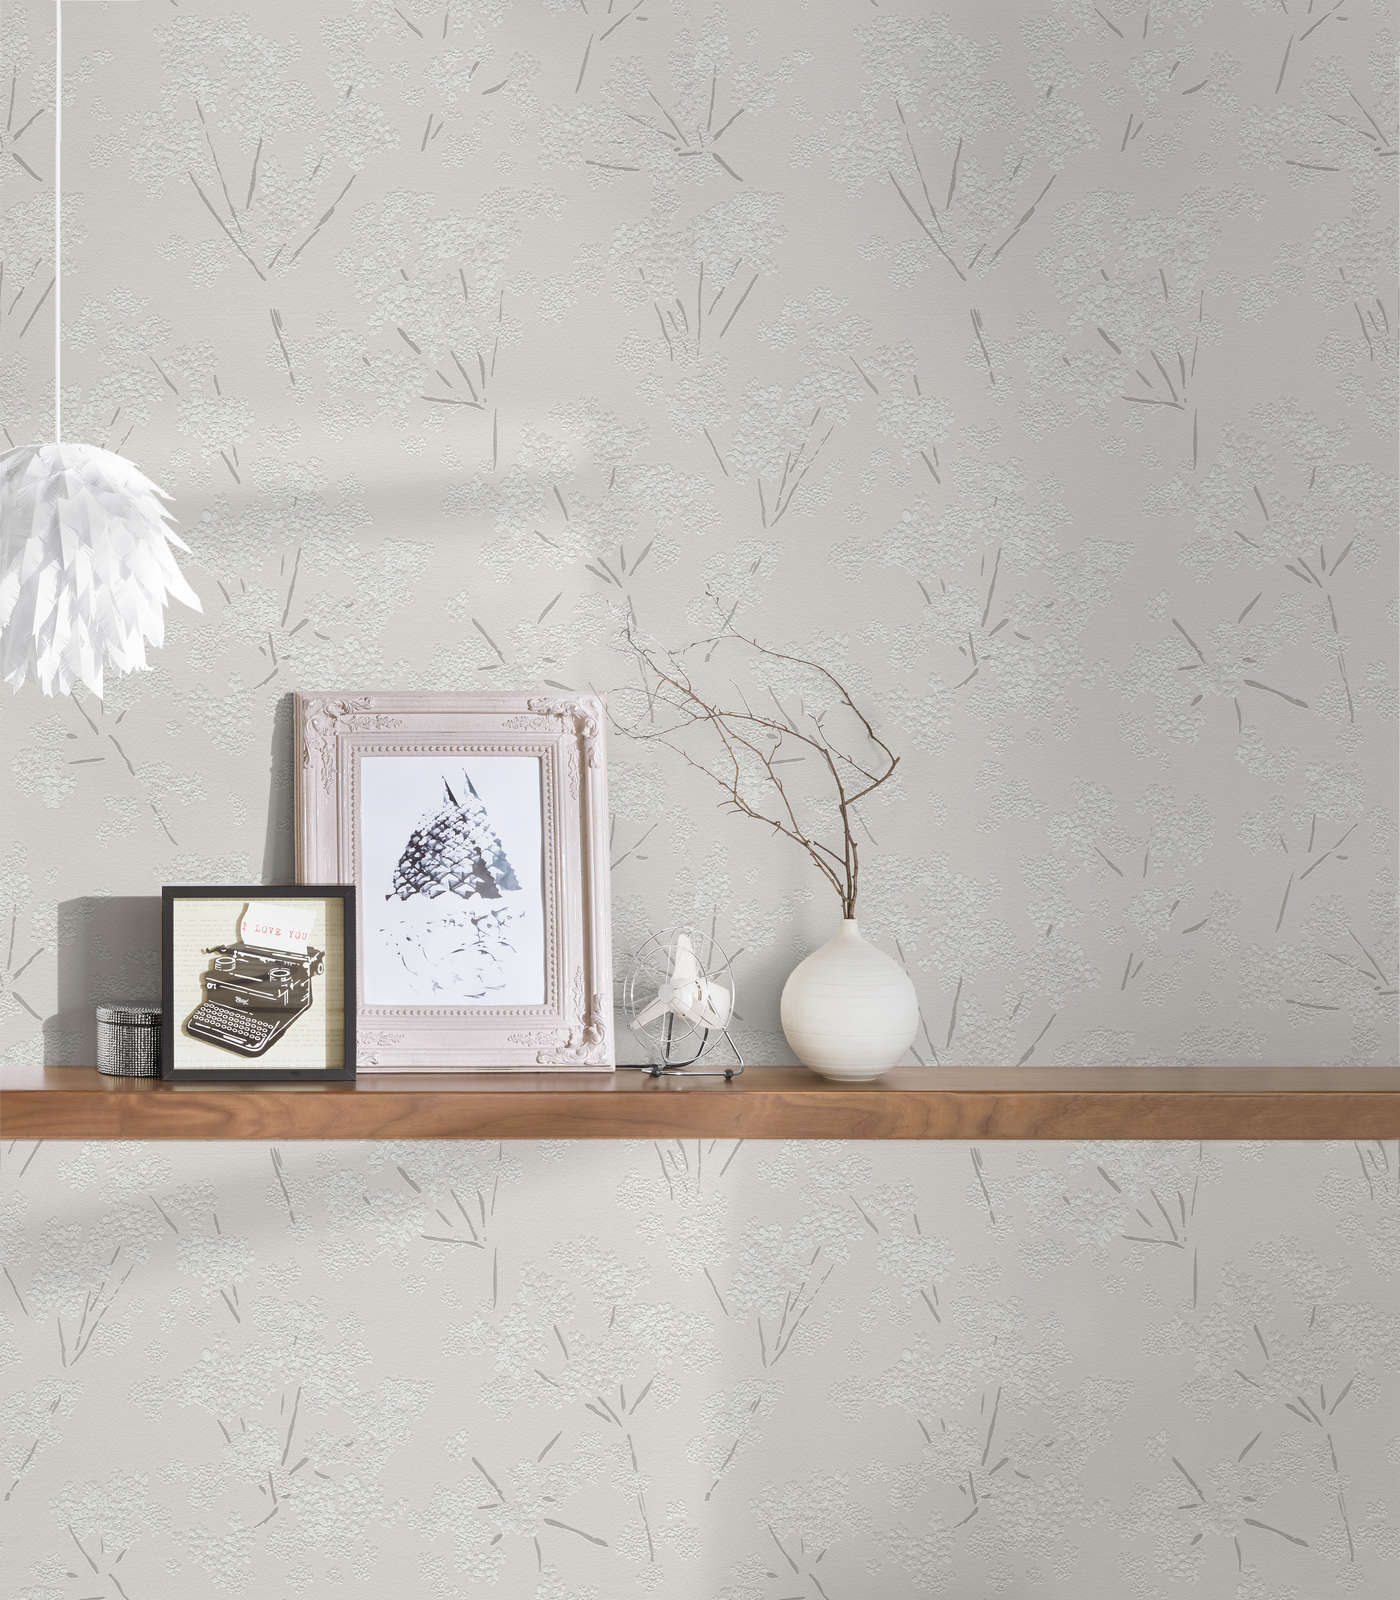             papier peint en papier intissé avec motif floral abstrait - gris, blanc
        